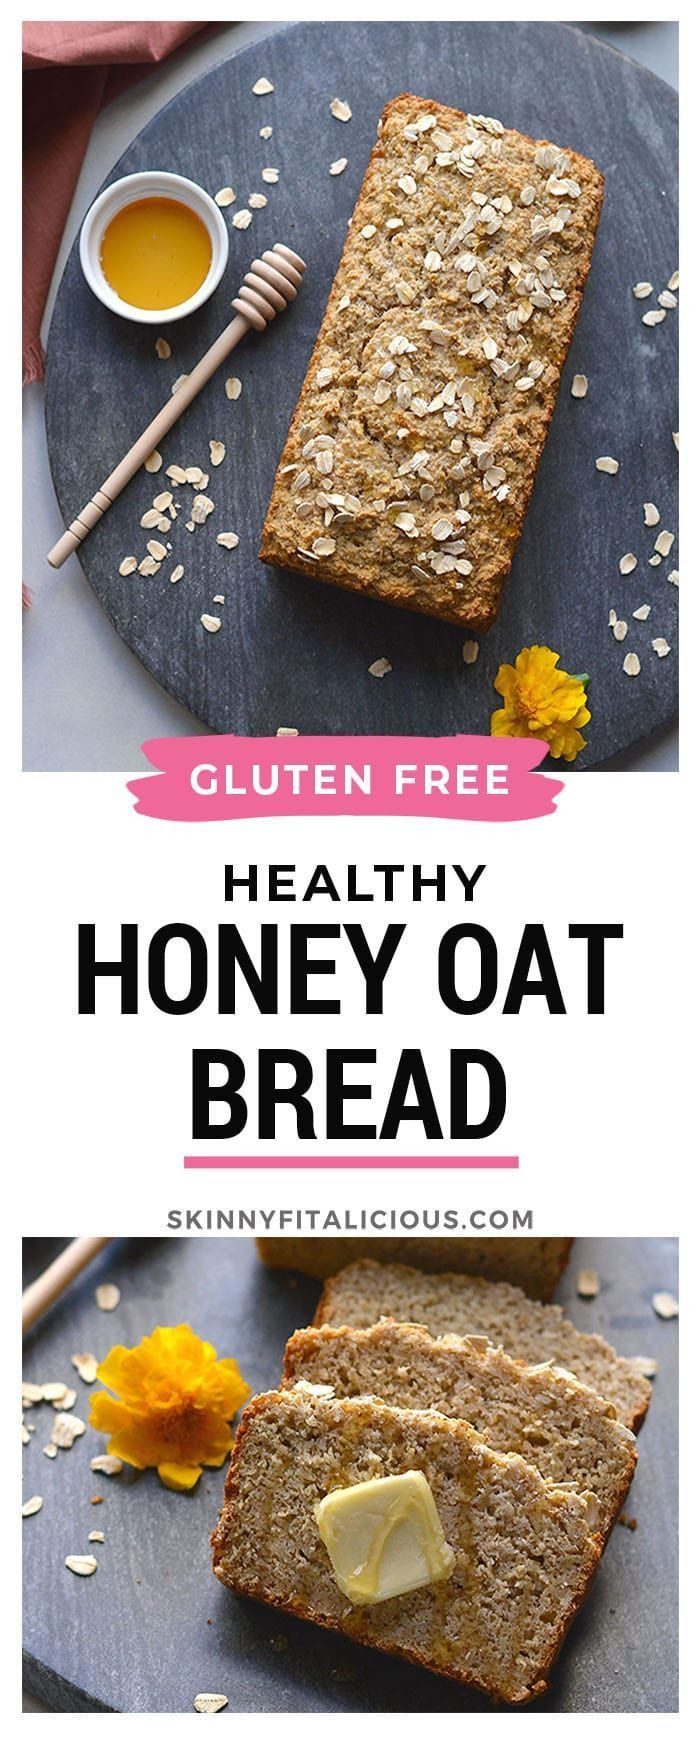 Gluten Free High Fiber Bread
 Gluten Free Honey Oat Bread made high fiber high protein